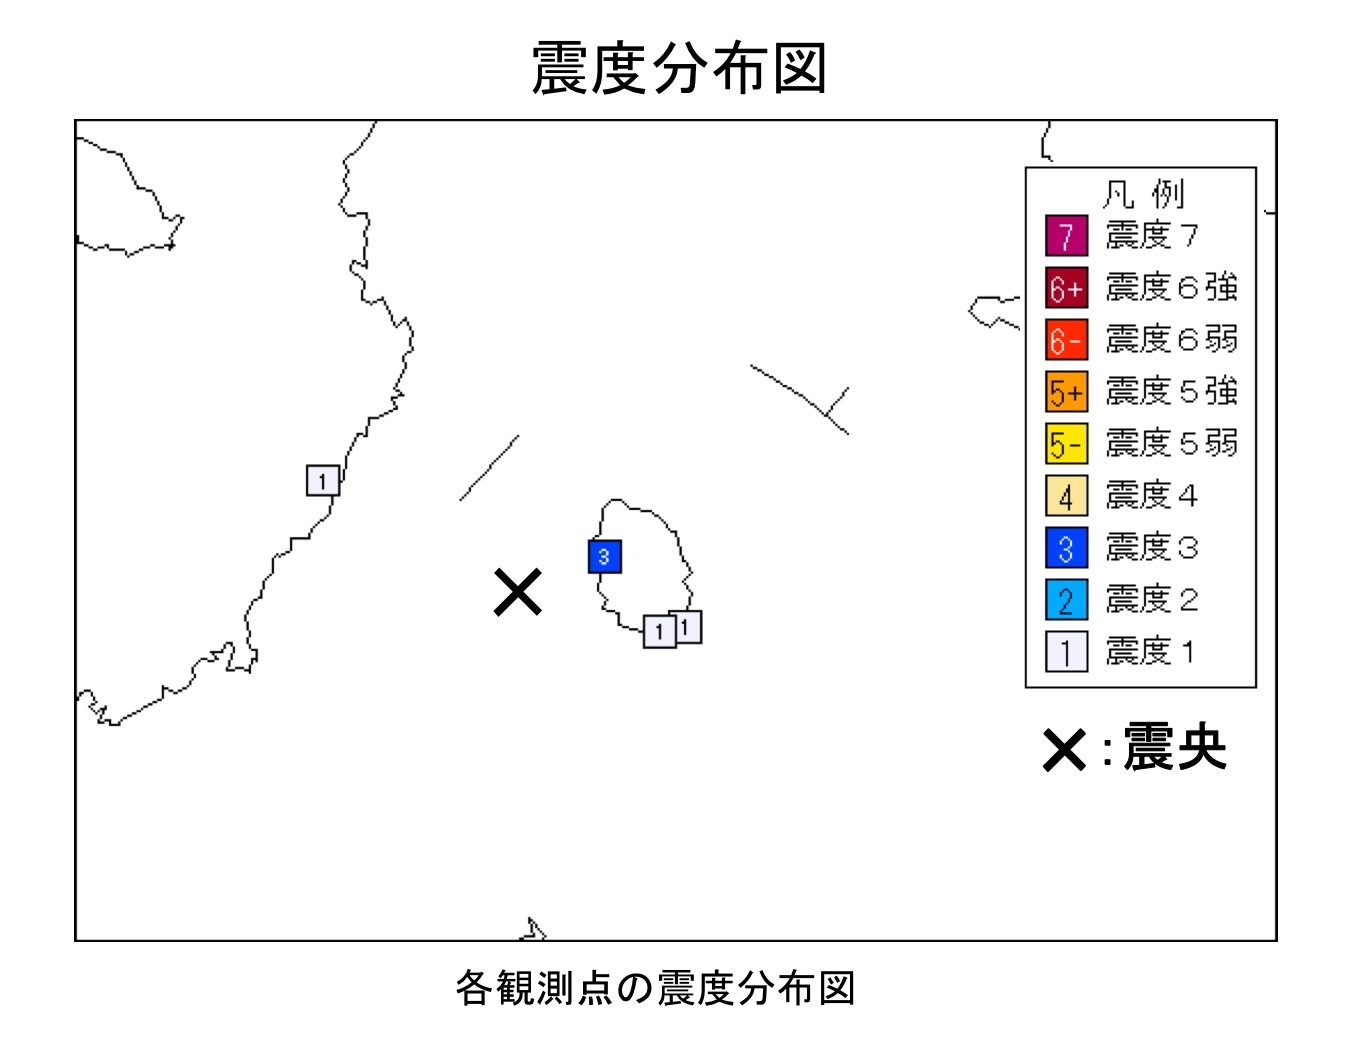 伊豆大島で地震相次ぐ 「今後も注意を」気象庁